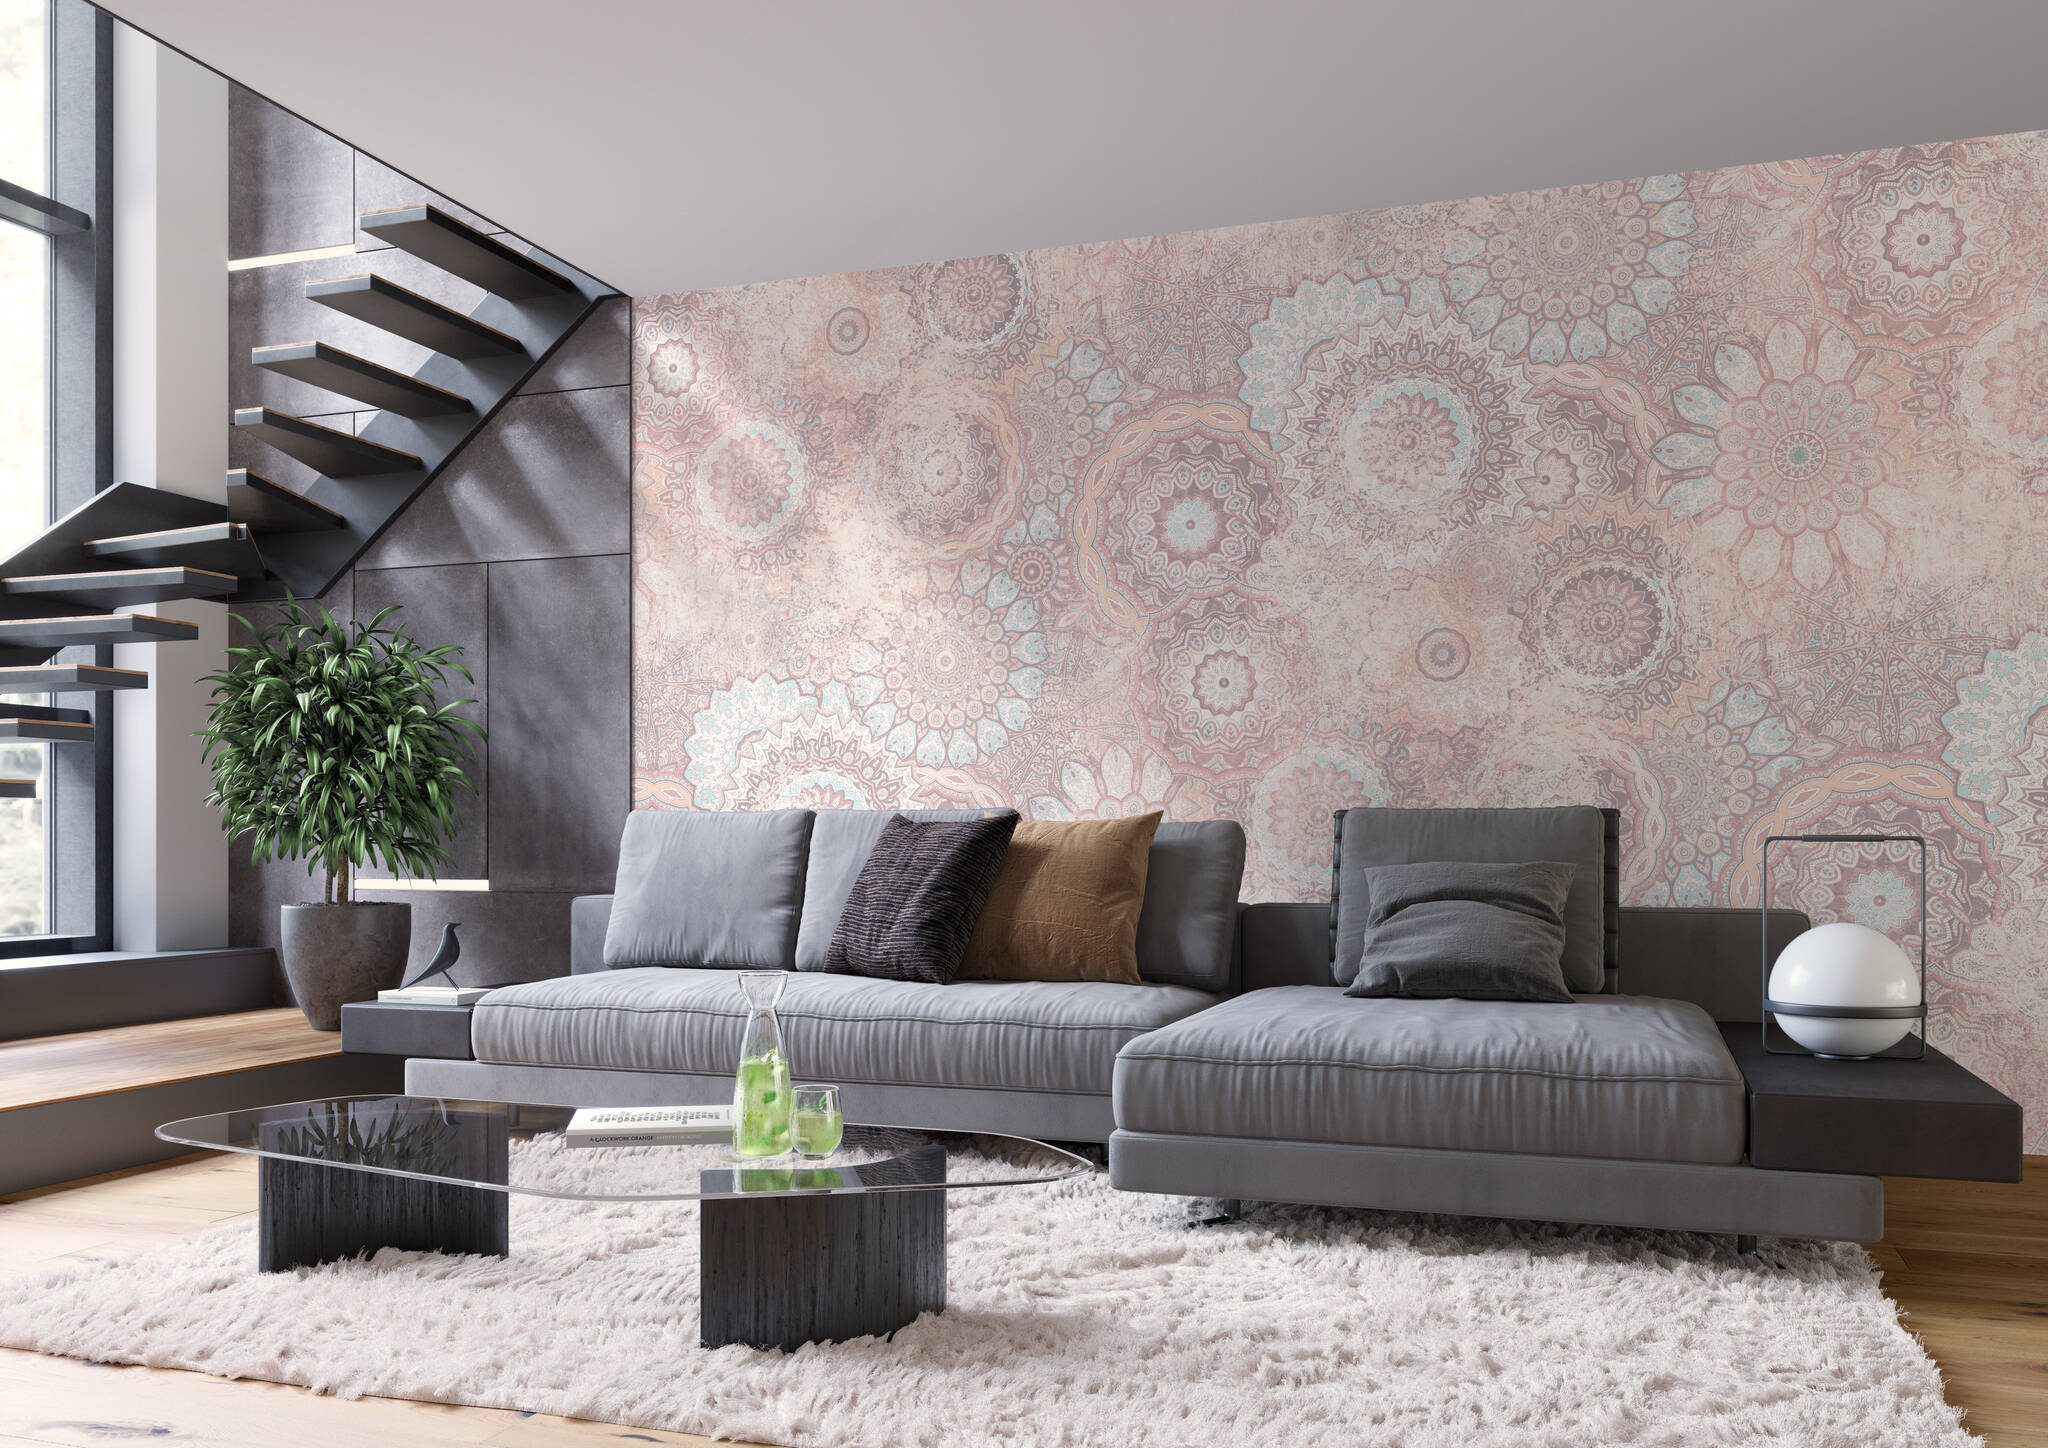 Wohnzimmer mit Wandbild - Prallvolle Mandala-Sammlung in Pastellblau, -creme und -rosa mit wash-out-Effekten